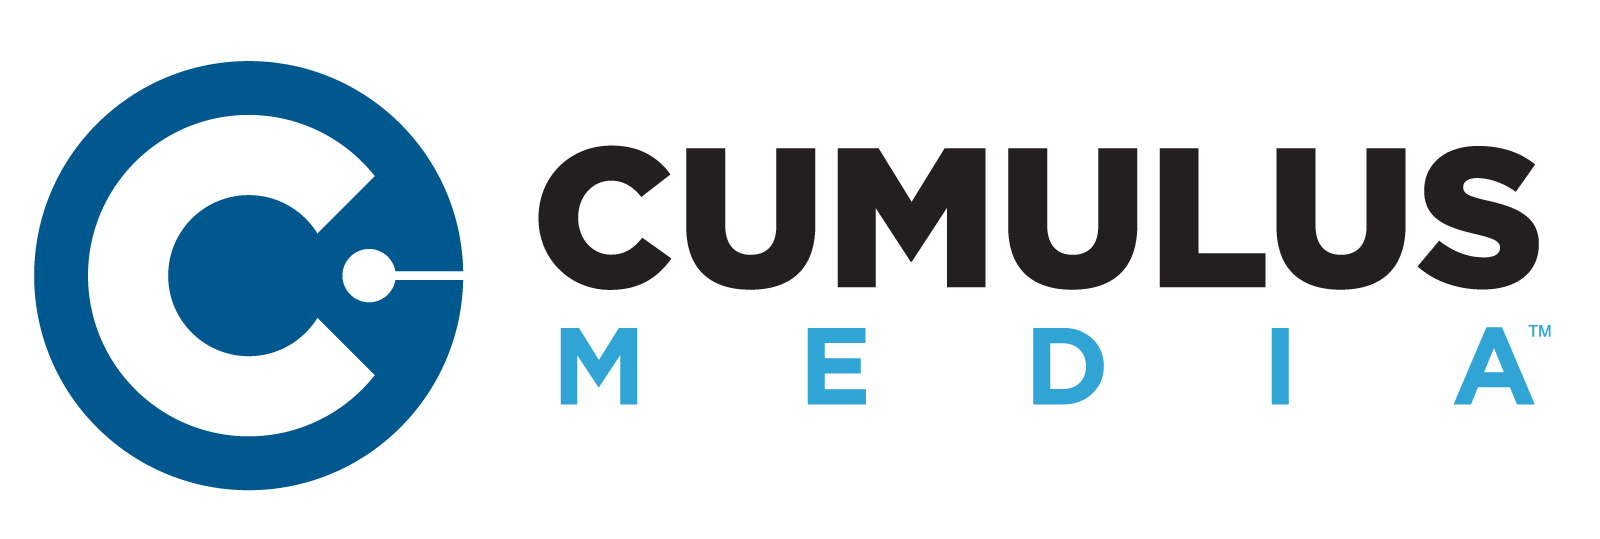 CUMULUS-MEDIA-Horizontal-1